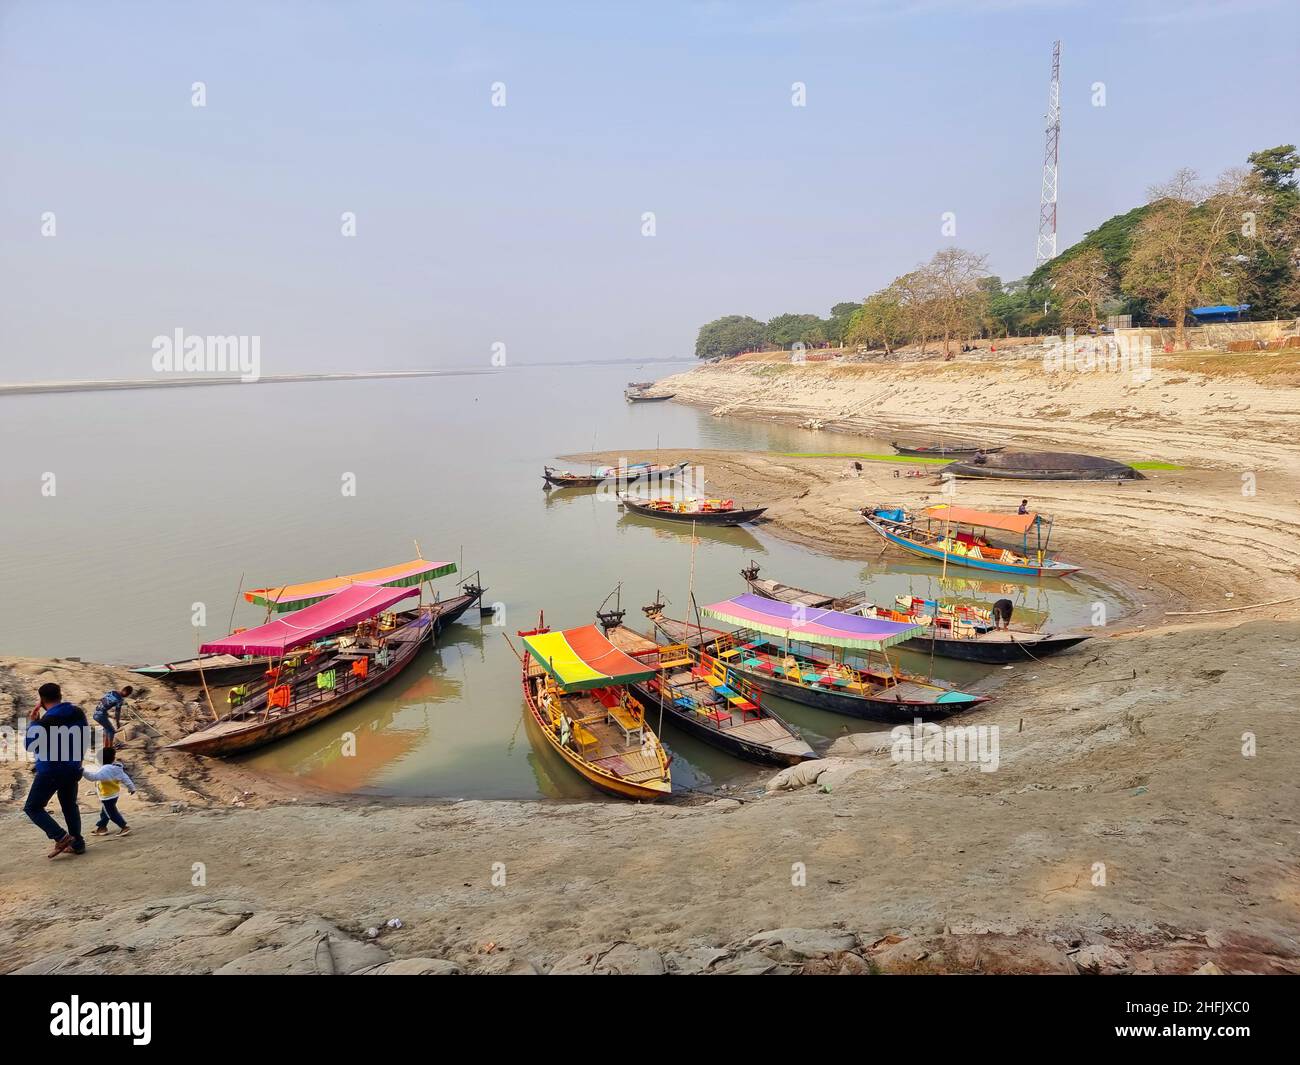 Lokale Holzboote fuhren entlang des Ufers des Meghna-Flusses und warteten auf Passagiere oder Touristen in Rajshahi, einer nordwestlichen Division in Bangladesch. Der Meghna-Fluss ist einer der größten Flüsse in Bangladesch, einer der drei Flüsse, die das Ganges-Delta bilden, das größte Delta der Erde, das sich bis in die Bucht von Bengalen erstreckt. Die Meghna entsteht durch den Zusammenfluss der Flüsse Surma und Kushiyara, die aus den hügeligen Regionen Ostindiens bis Chandpur stammen. Meghna wird hydrographisch als Oberes Meghna bezeichnet. Nachdem sich das Padma anschließt, wird es als die untere Meghna bezeichnet. Stockfoto